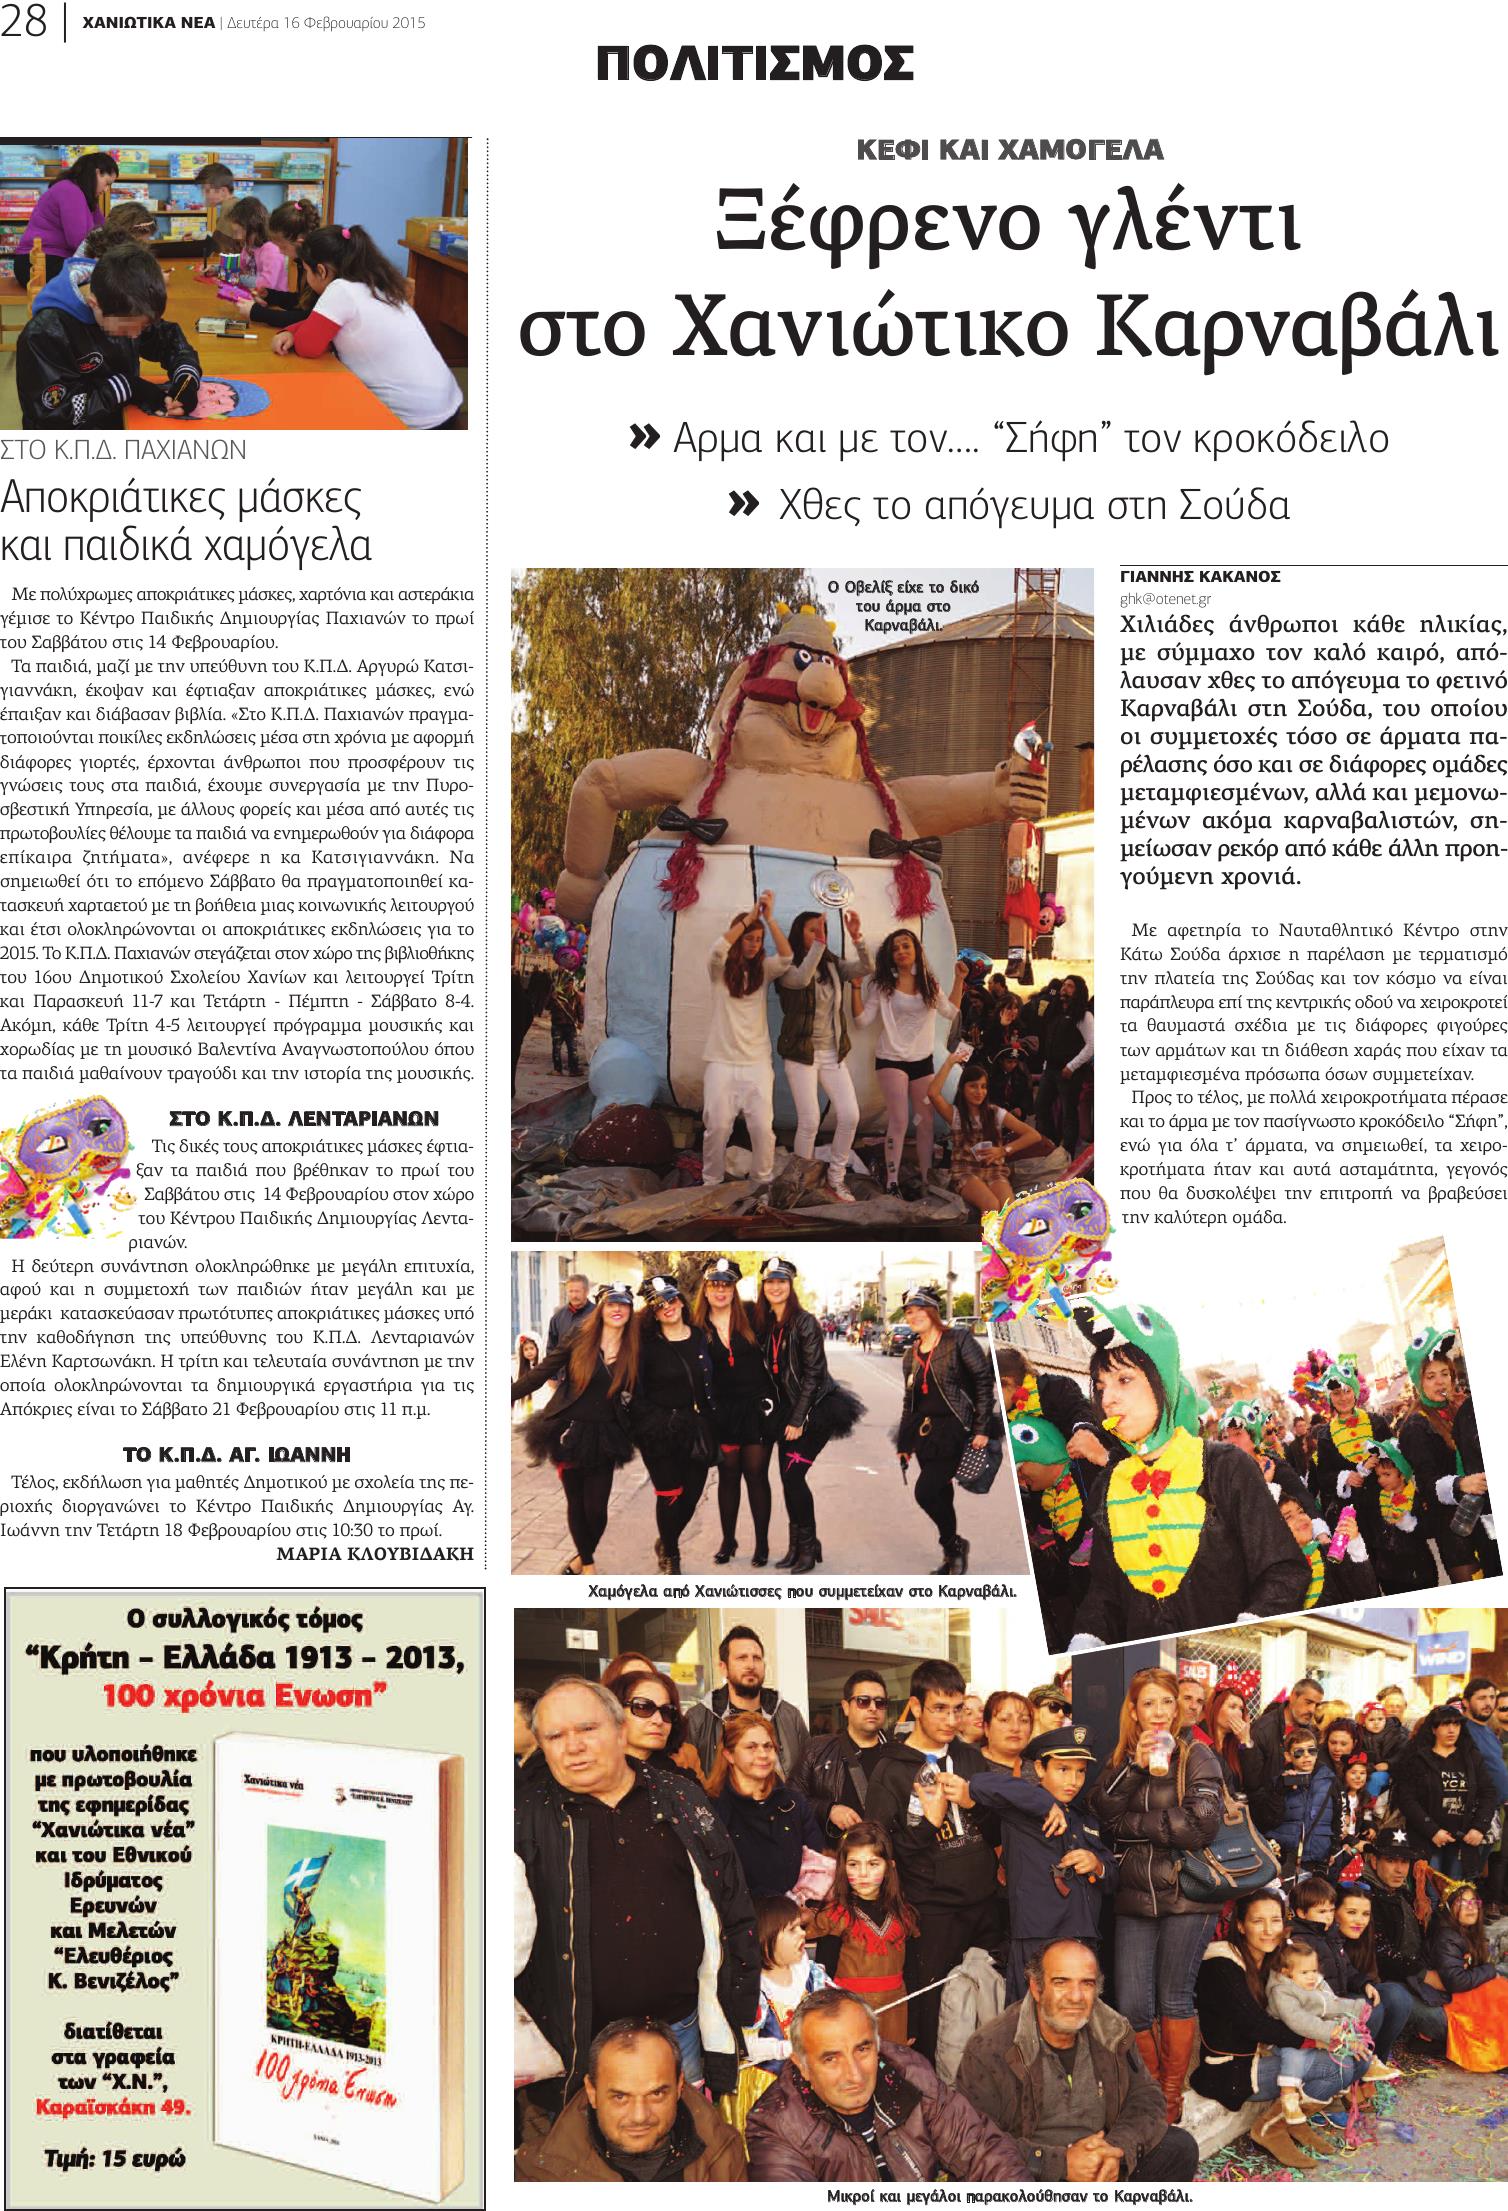 28-20150216 Καρναβάλι Χανίων σελ. 1